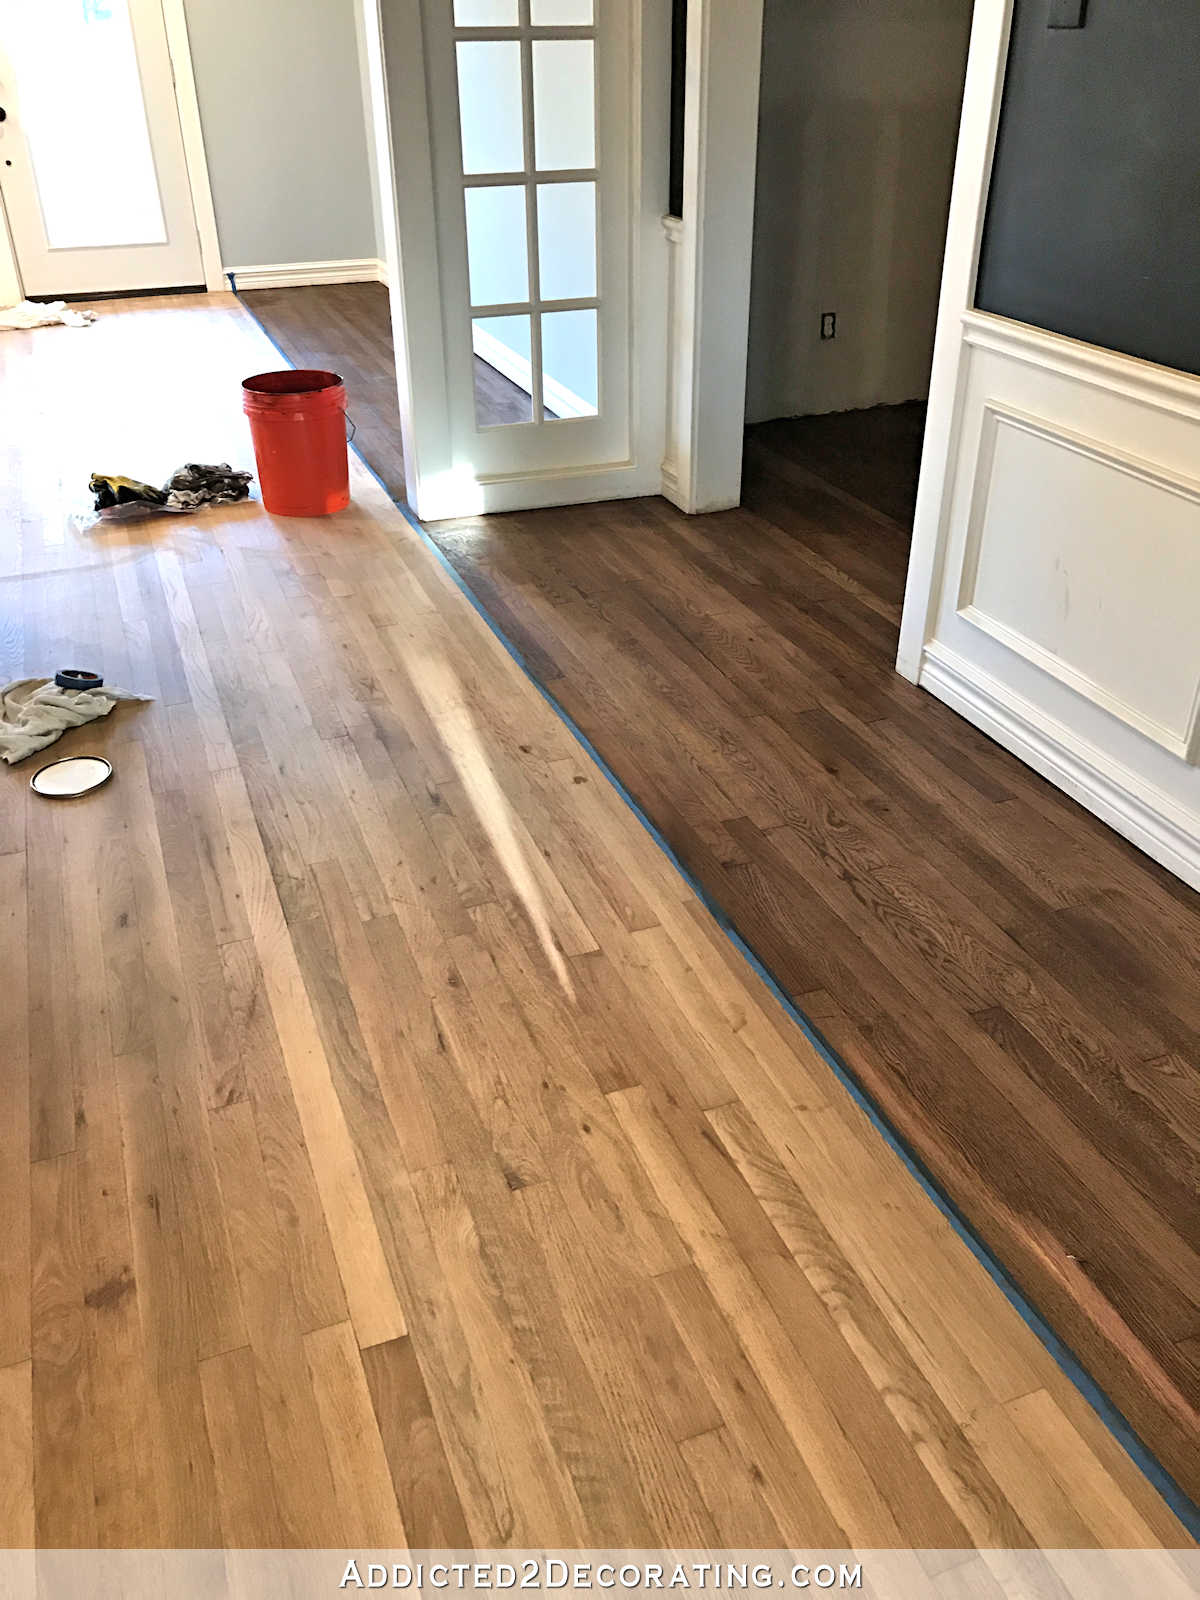 Staining My Red Oak Hardwood Floors, How Much Stain For Hardwood Floors